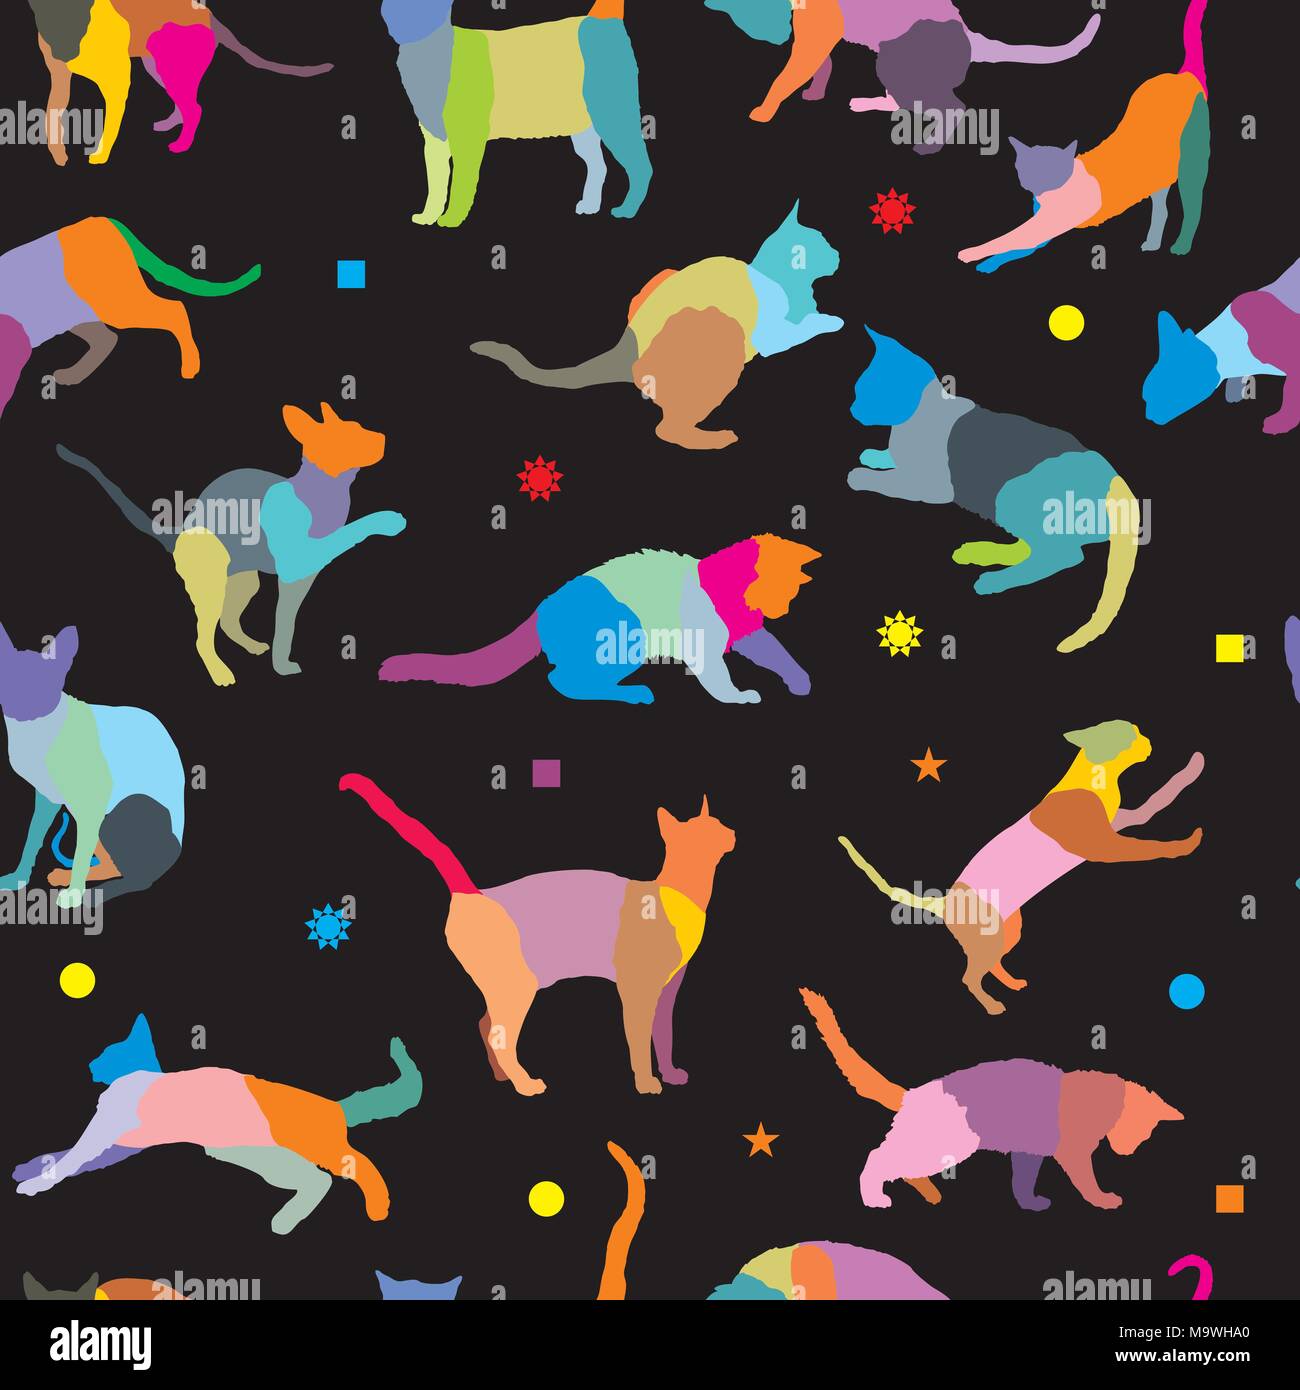 Transparente avec motif vecteur mosaïque différentes races de chats et de figures géométriques différentes, sur fond noir Illustration de Vecteur